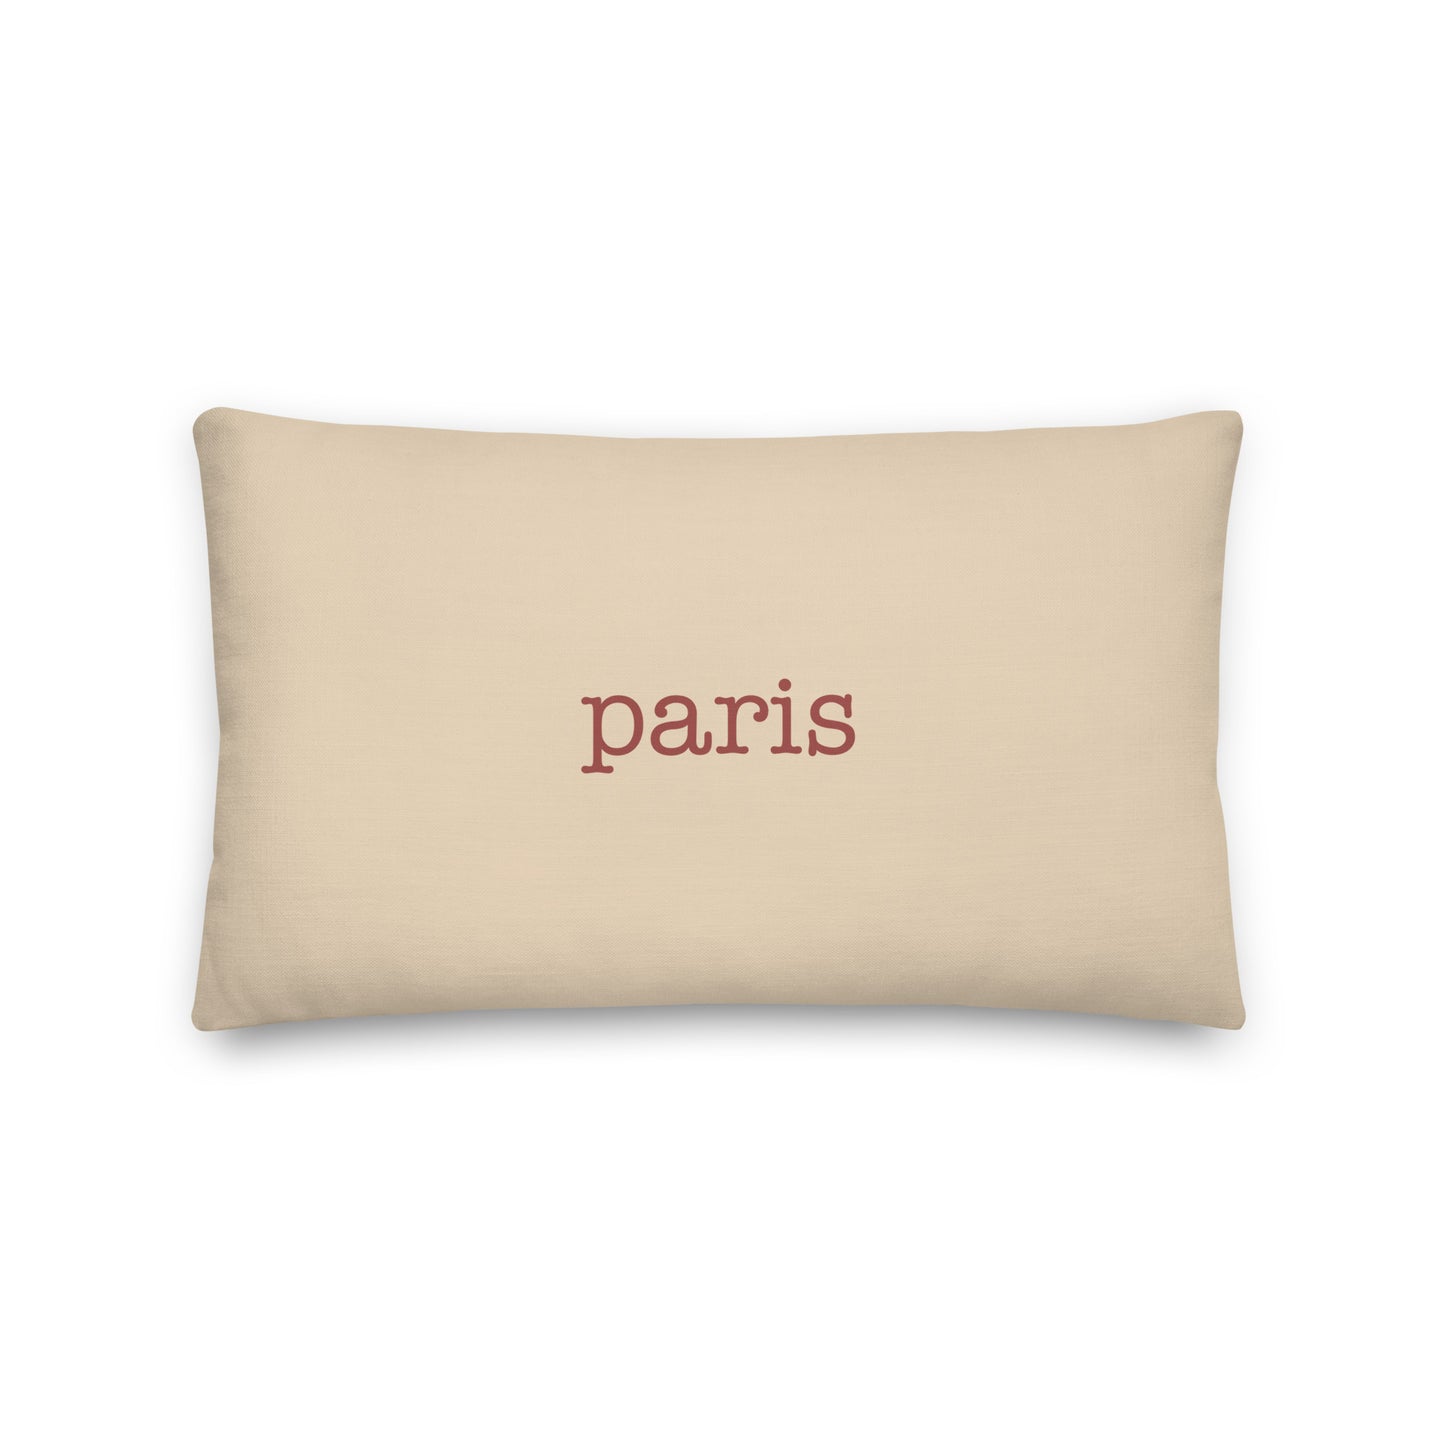 Typewriter Pillow - Terra Cotta • CDG Paris • YHM Designs - Image 01